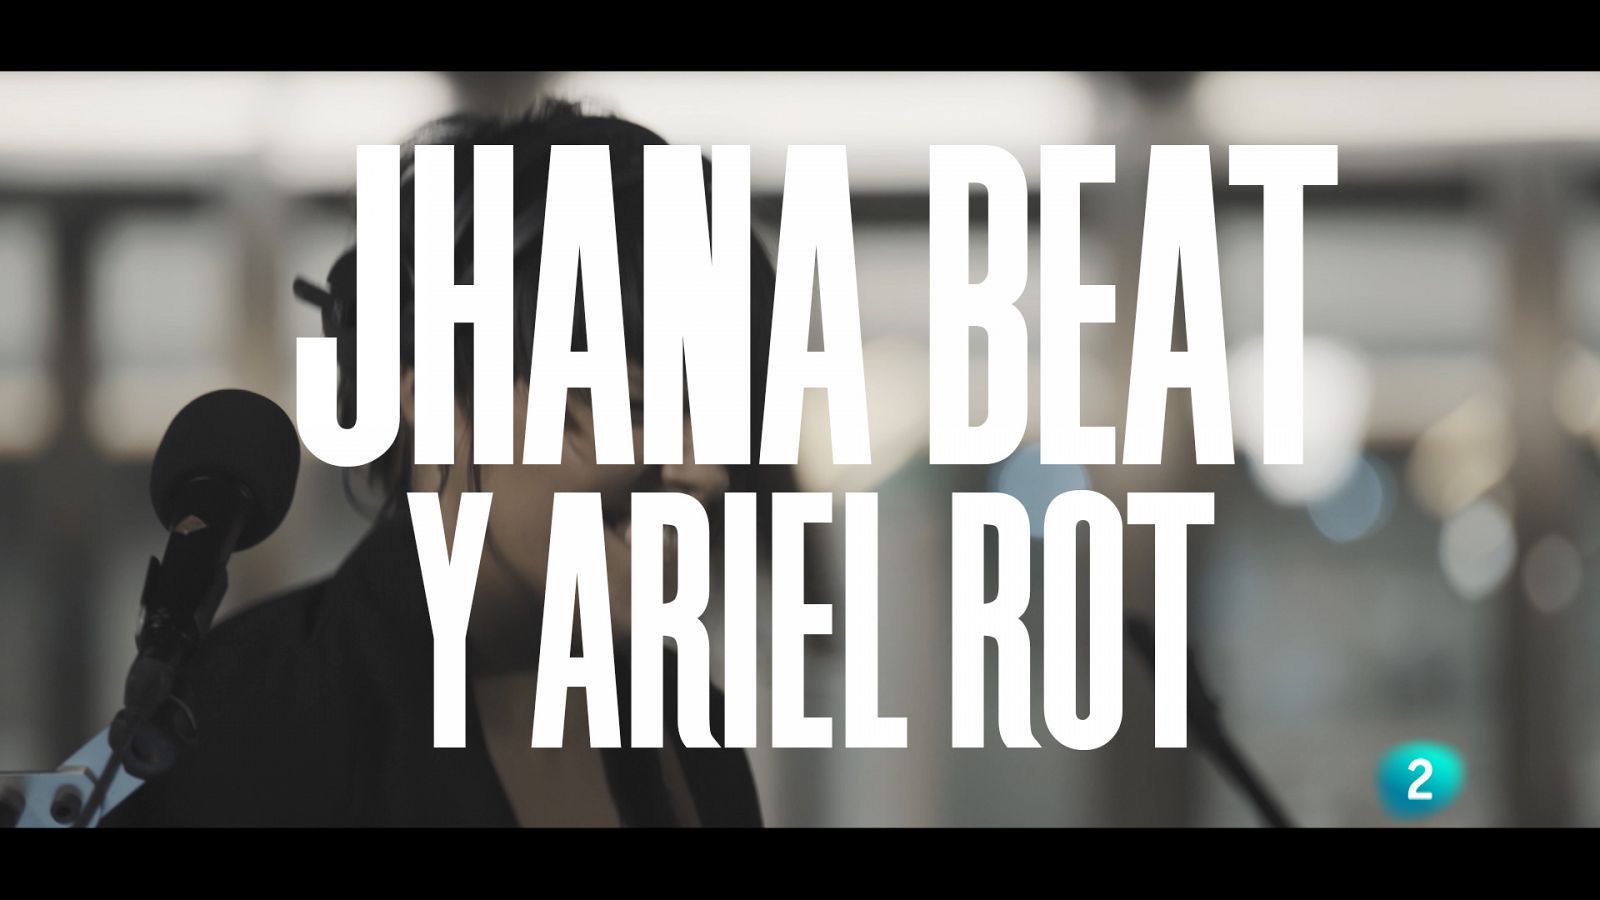 Un país para escucharlo - Escuchando Valladolid y León - Jhana Beat y Ariel Rot "Song to forget"  